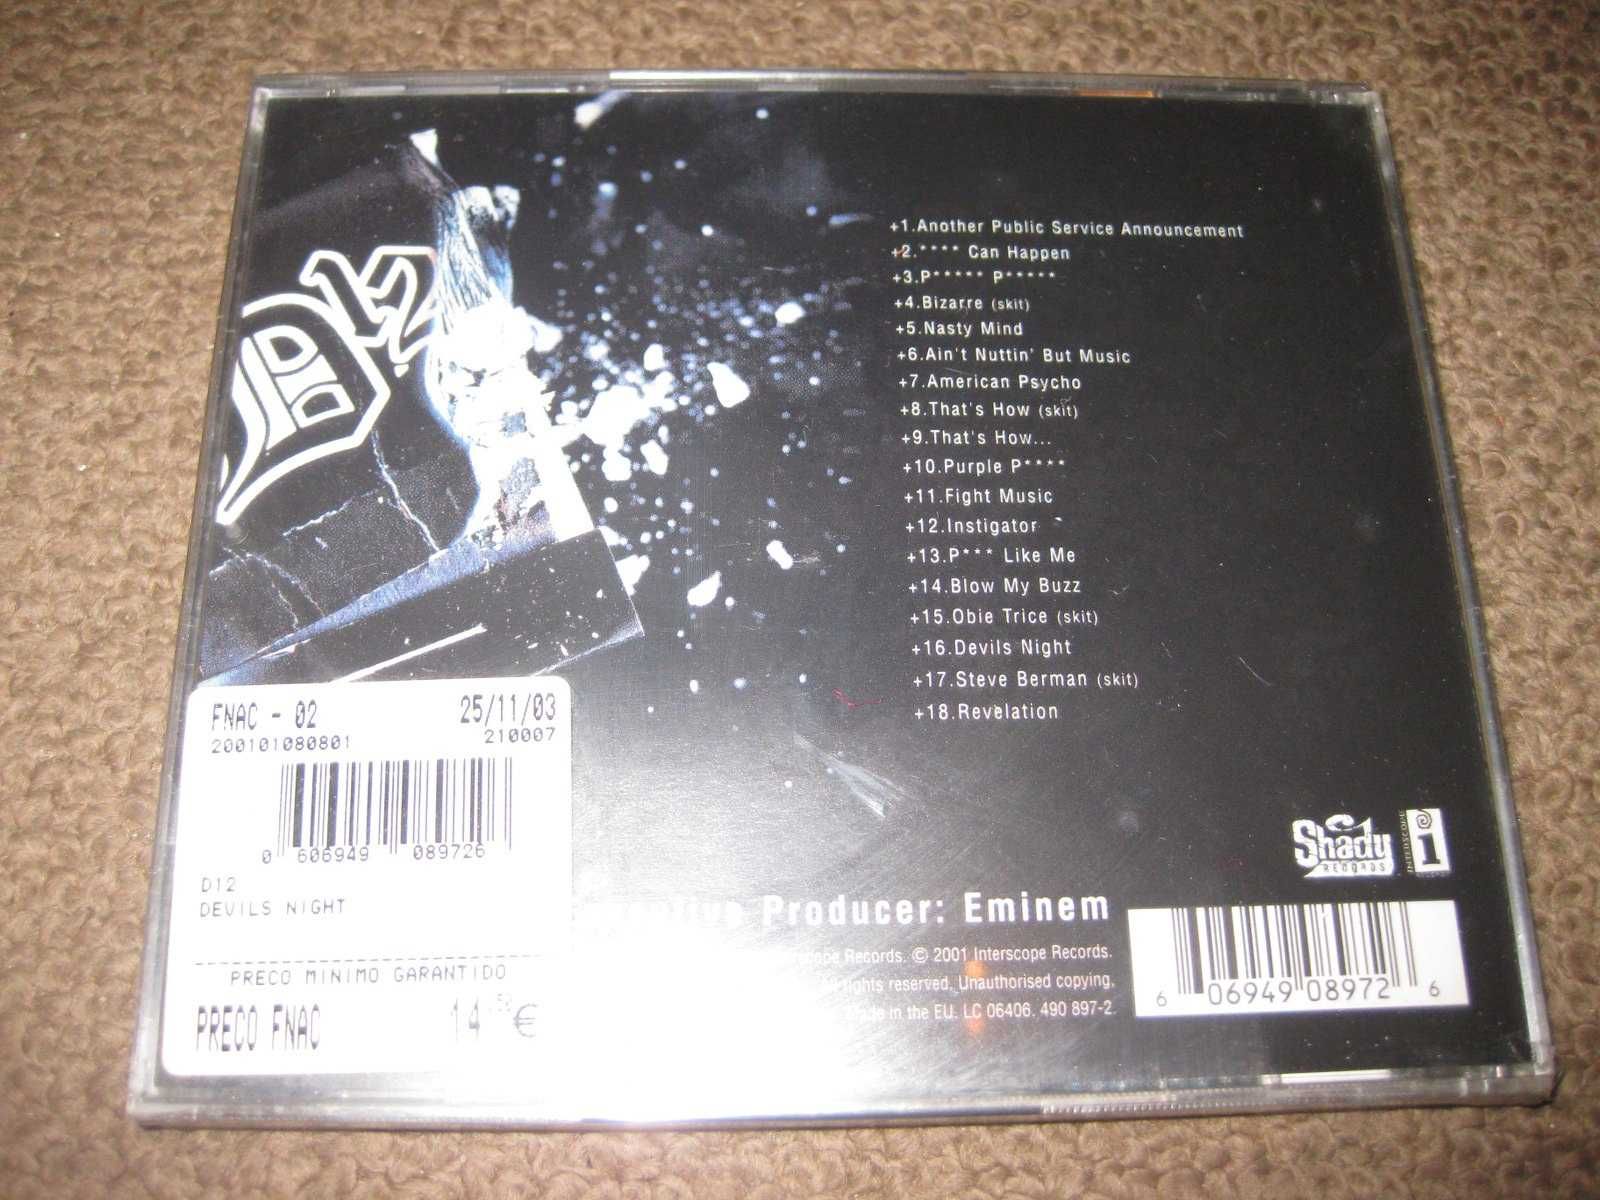 CD dos D12 "Devil's Night" Selado/Portes Grátis!